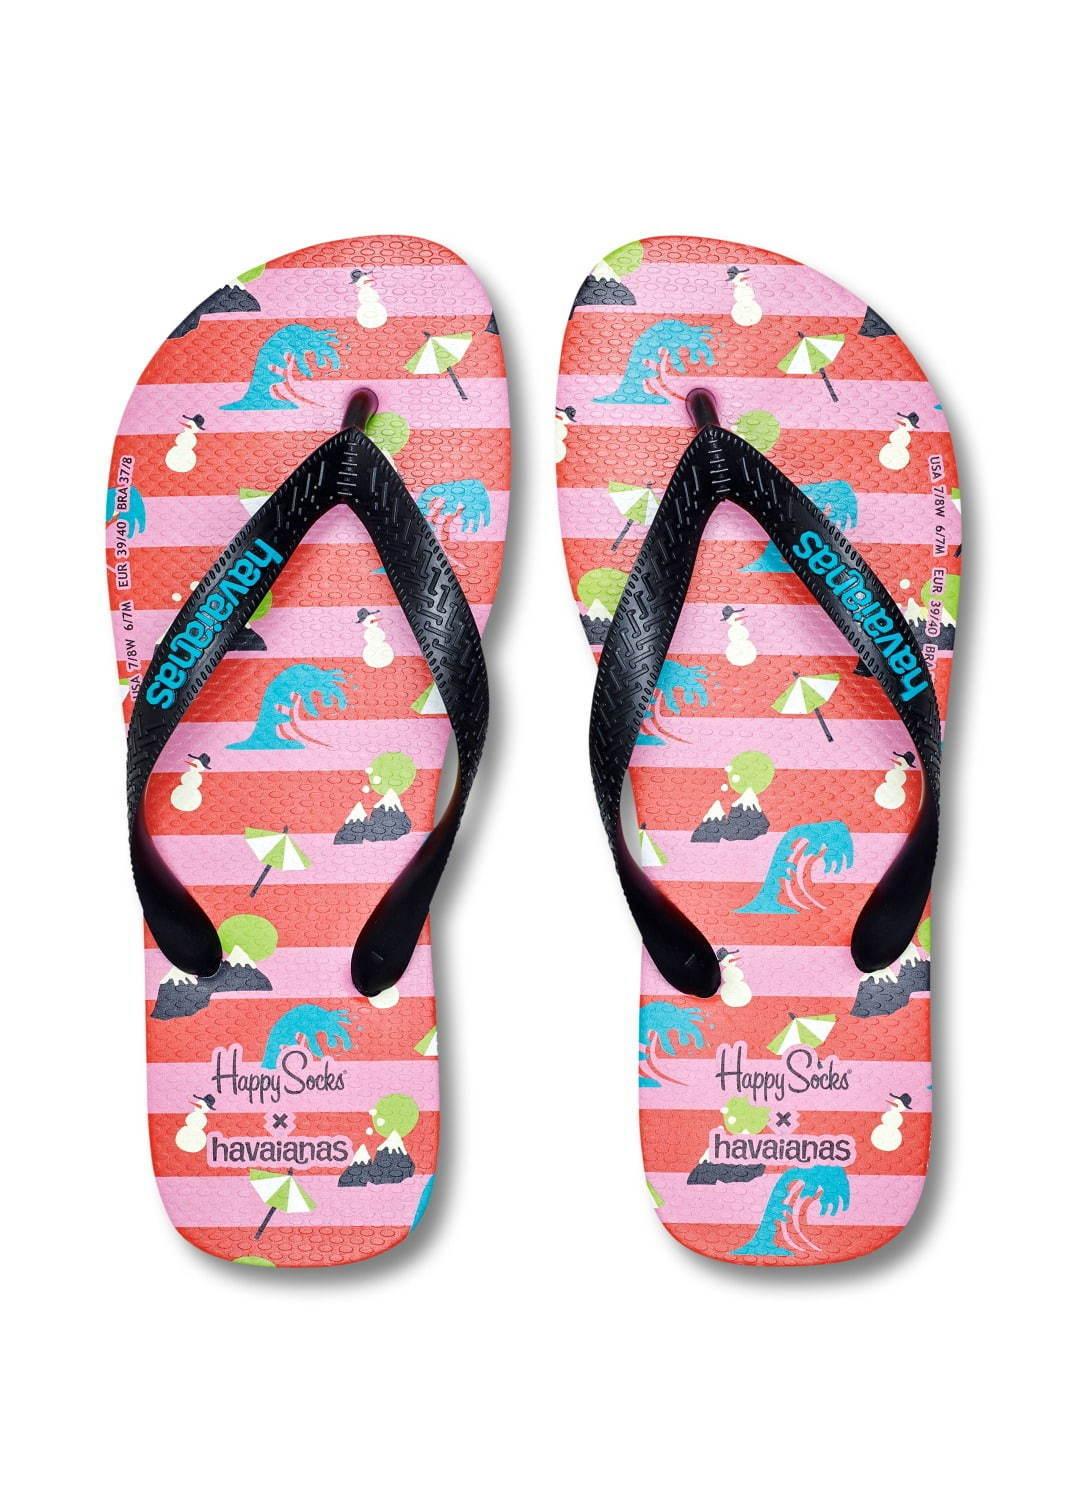 ハッピーソックス×ハワイアナスのビーチサンダル、夏×冬MIXモチーフの足袋ソックスとセットで コピー